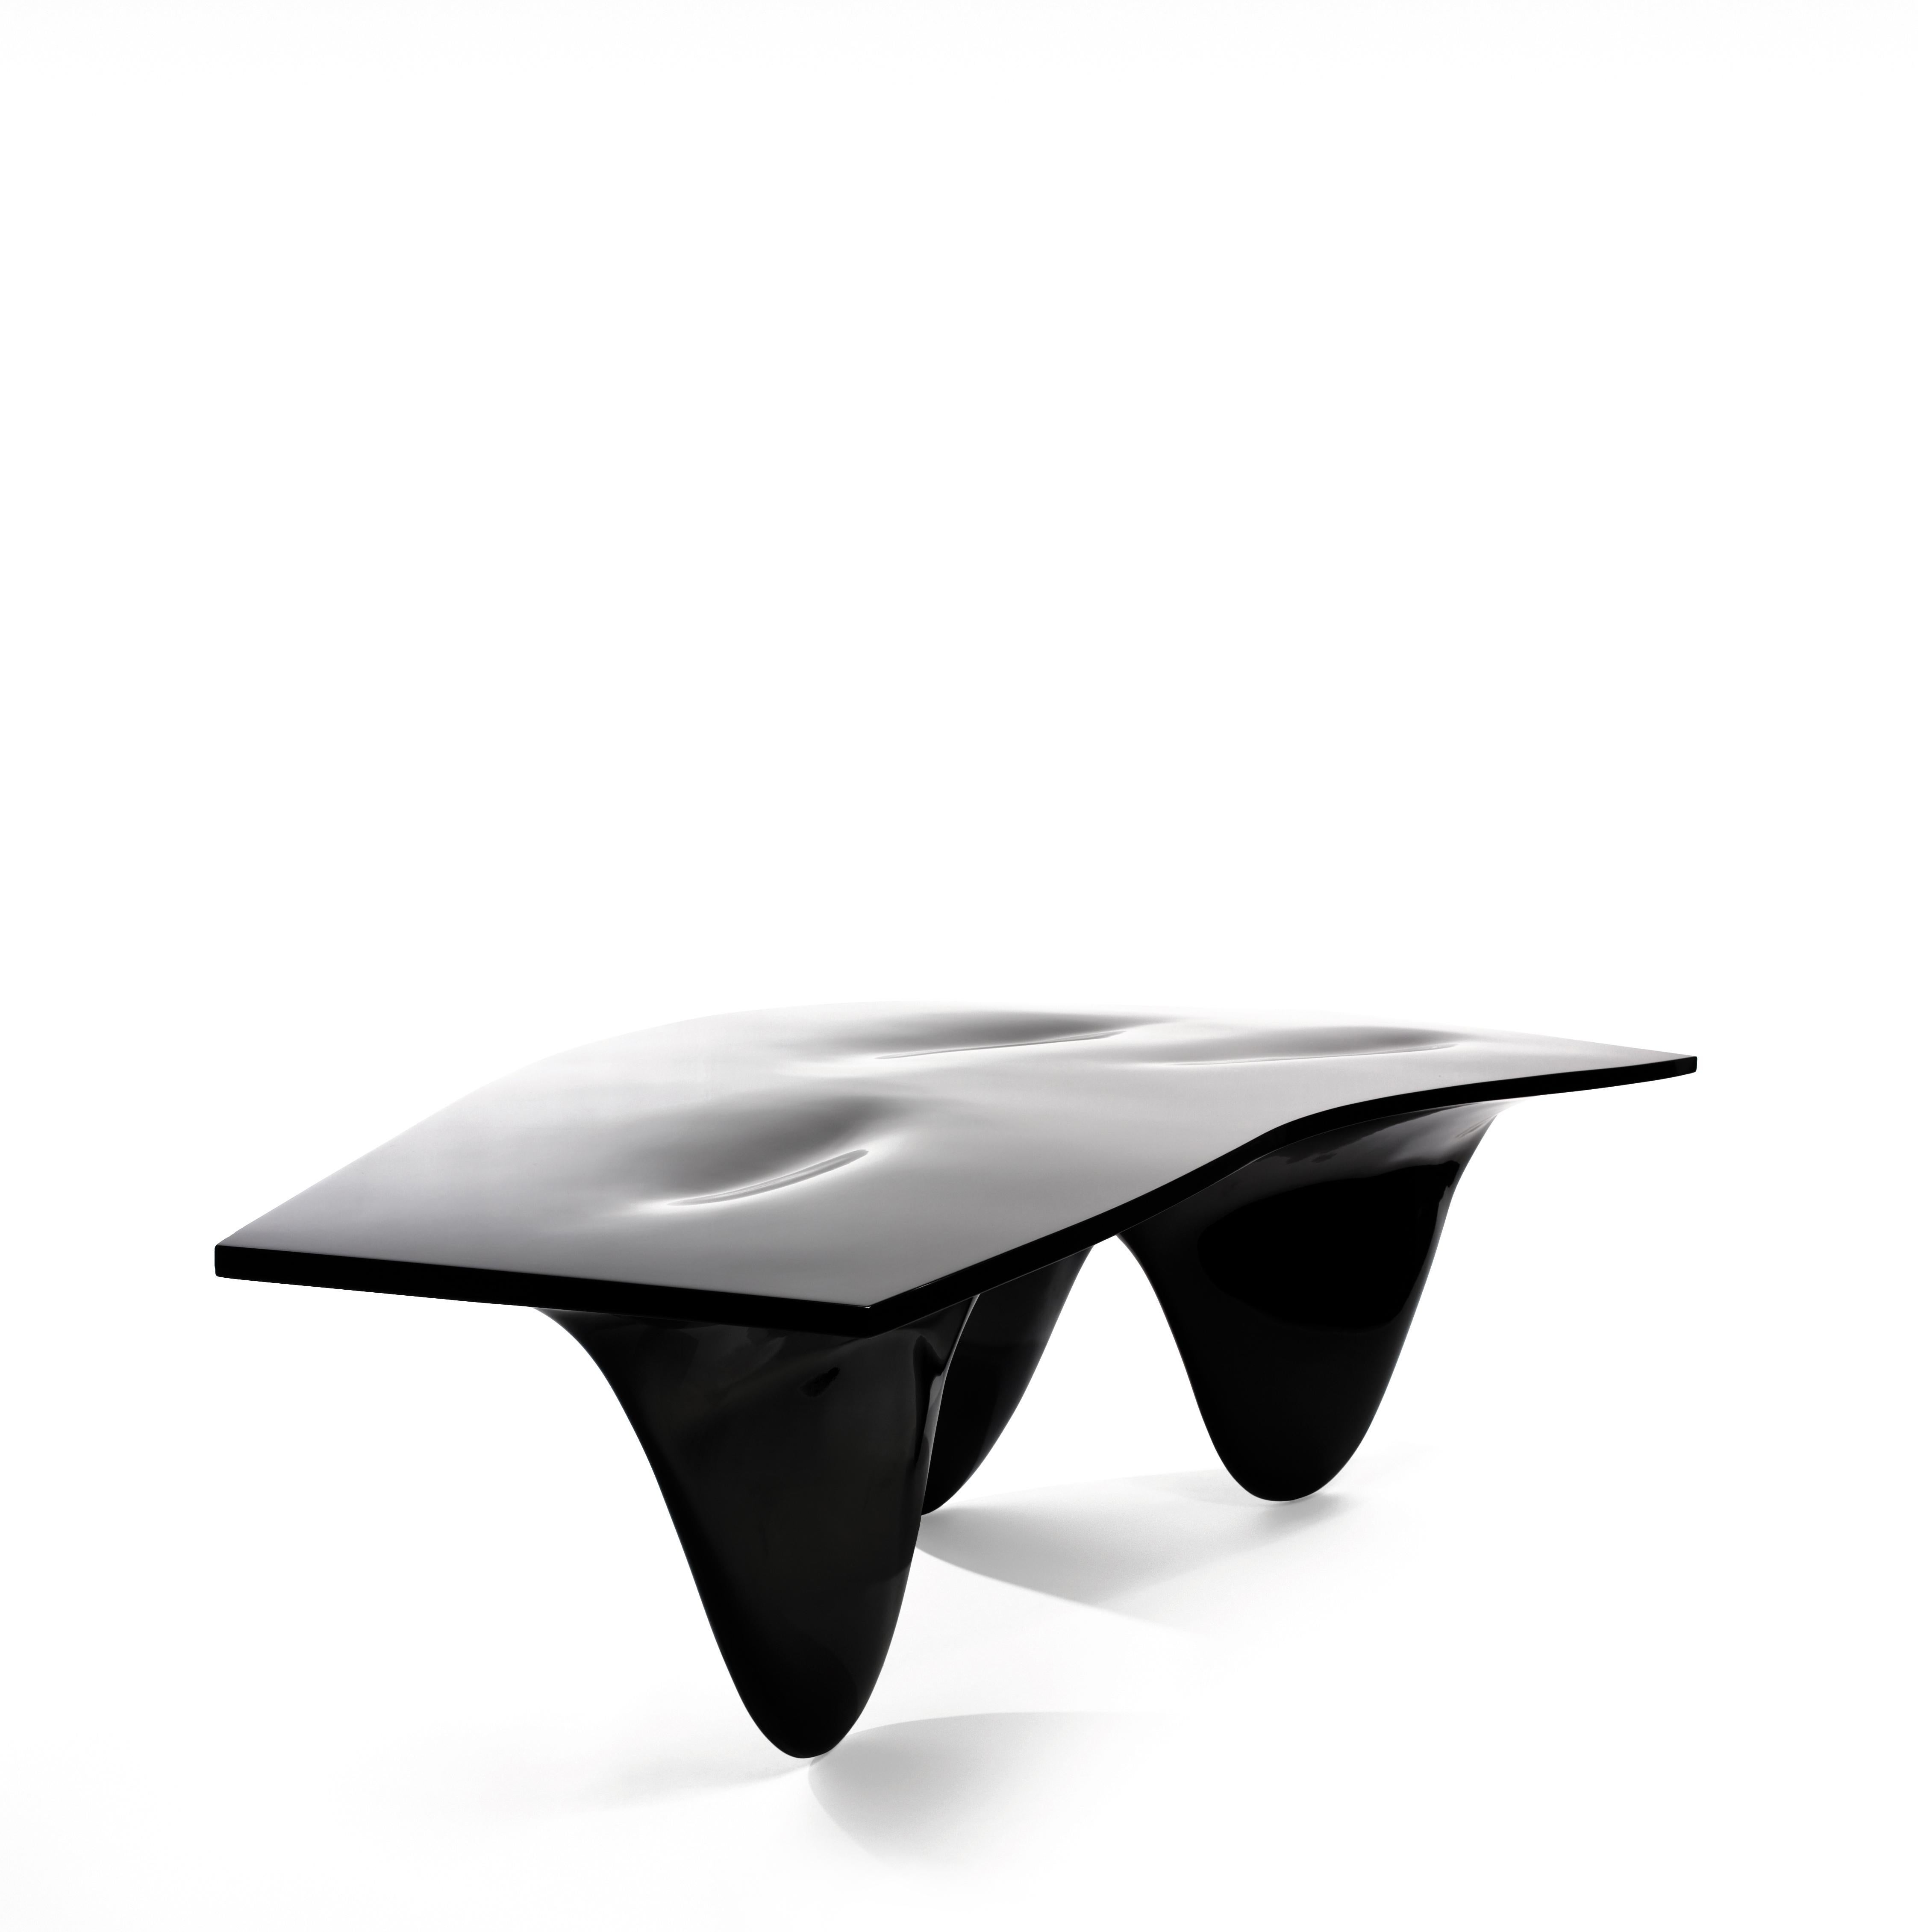 Zaha Hadids üppiger Aqua-Tisch ist ein ununterbrochenes Ganzes - eine neugierige und geschwungene Form, die den Betrachter einlädt, sich mit ihr auseinanderzusetzen. Als eindrucksvolles Mittelstück bildet er einen stilvollen Blickpunkt in jedem